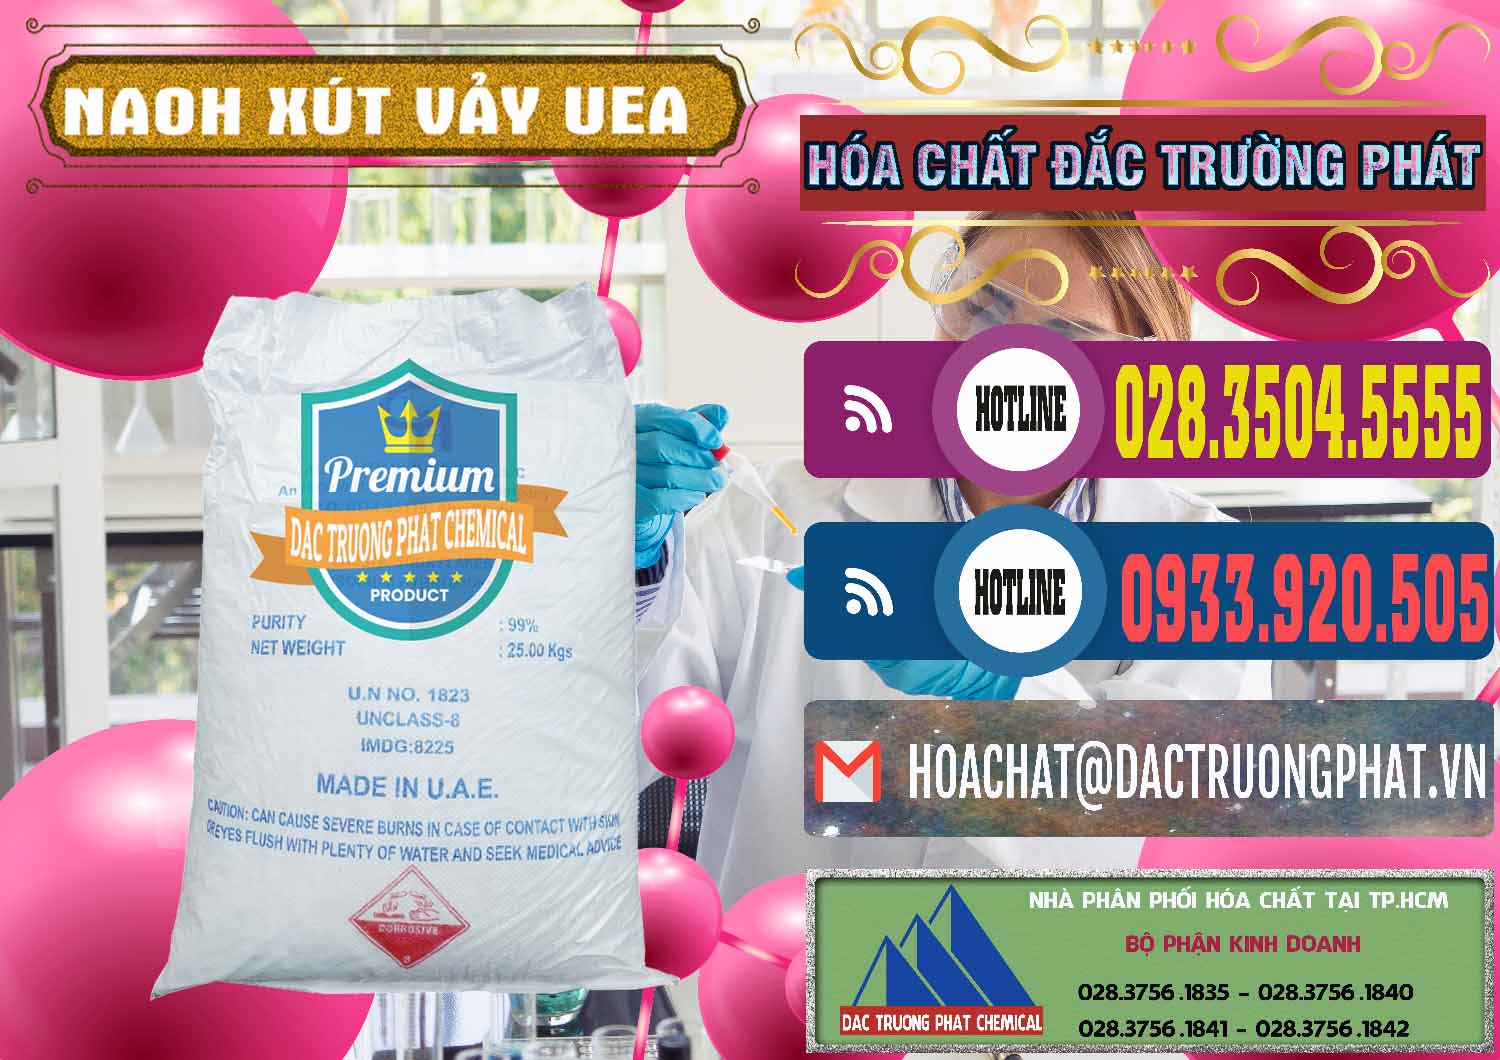 Công ty chuyên bán - cung cấp Xút Vảy - NaOH Vảy UAE Iran - 0432 - Nhà cung cấp & phân phối hóa chất tại TP.HCM - muabanhoachat.com.vn